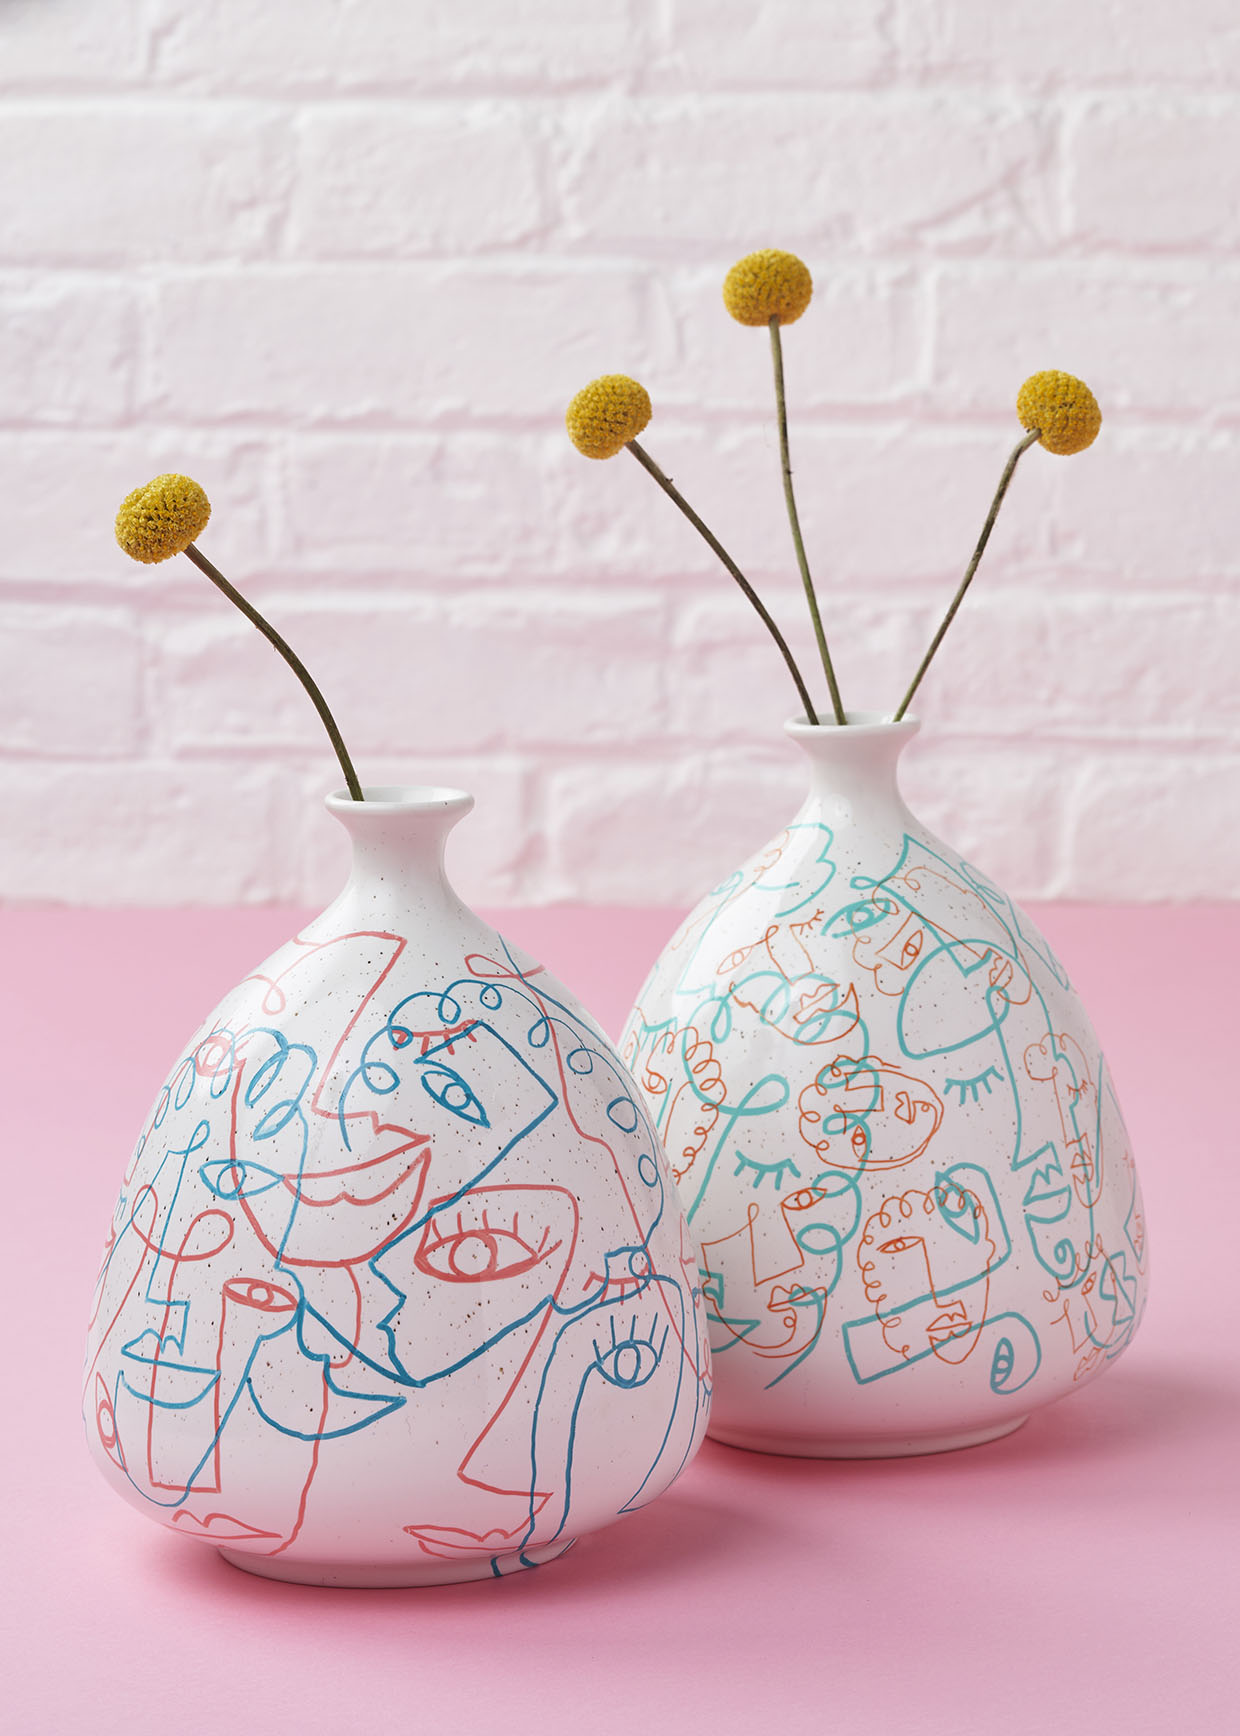 How to make a doodled vase